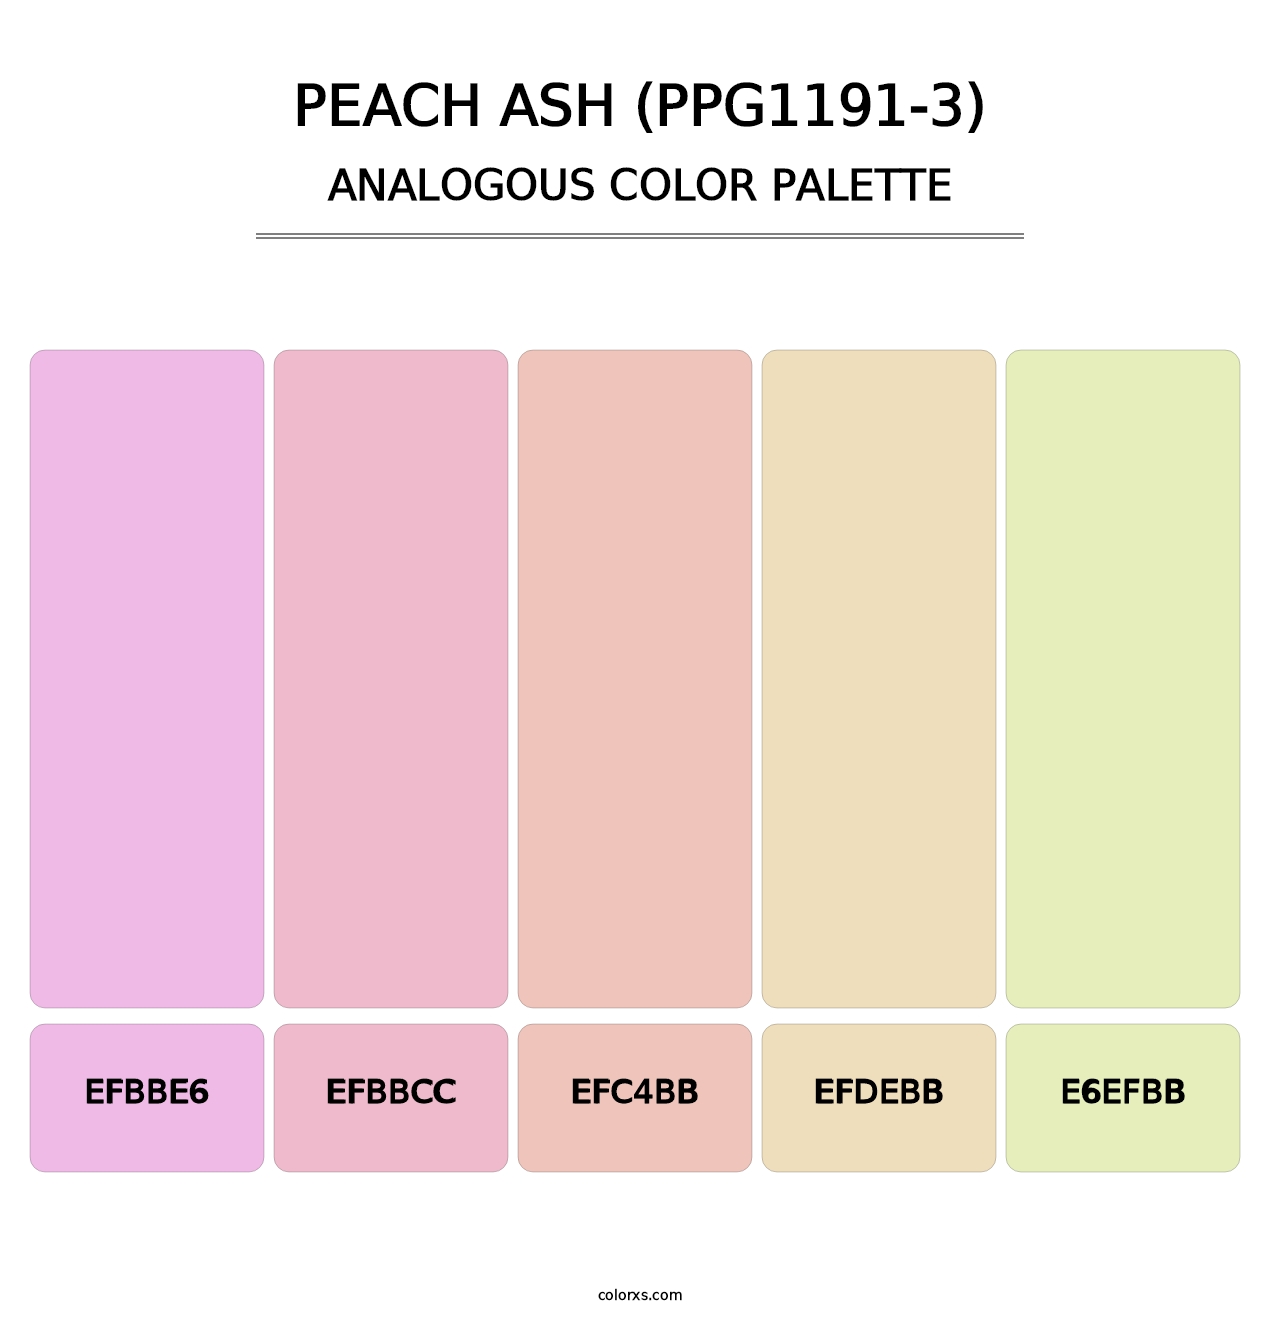 Peach Ash (PPG1191-3) - Analogous Color Palette